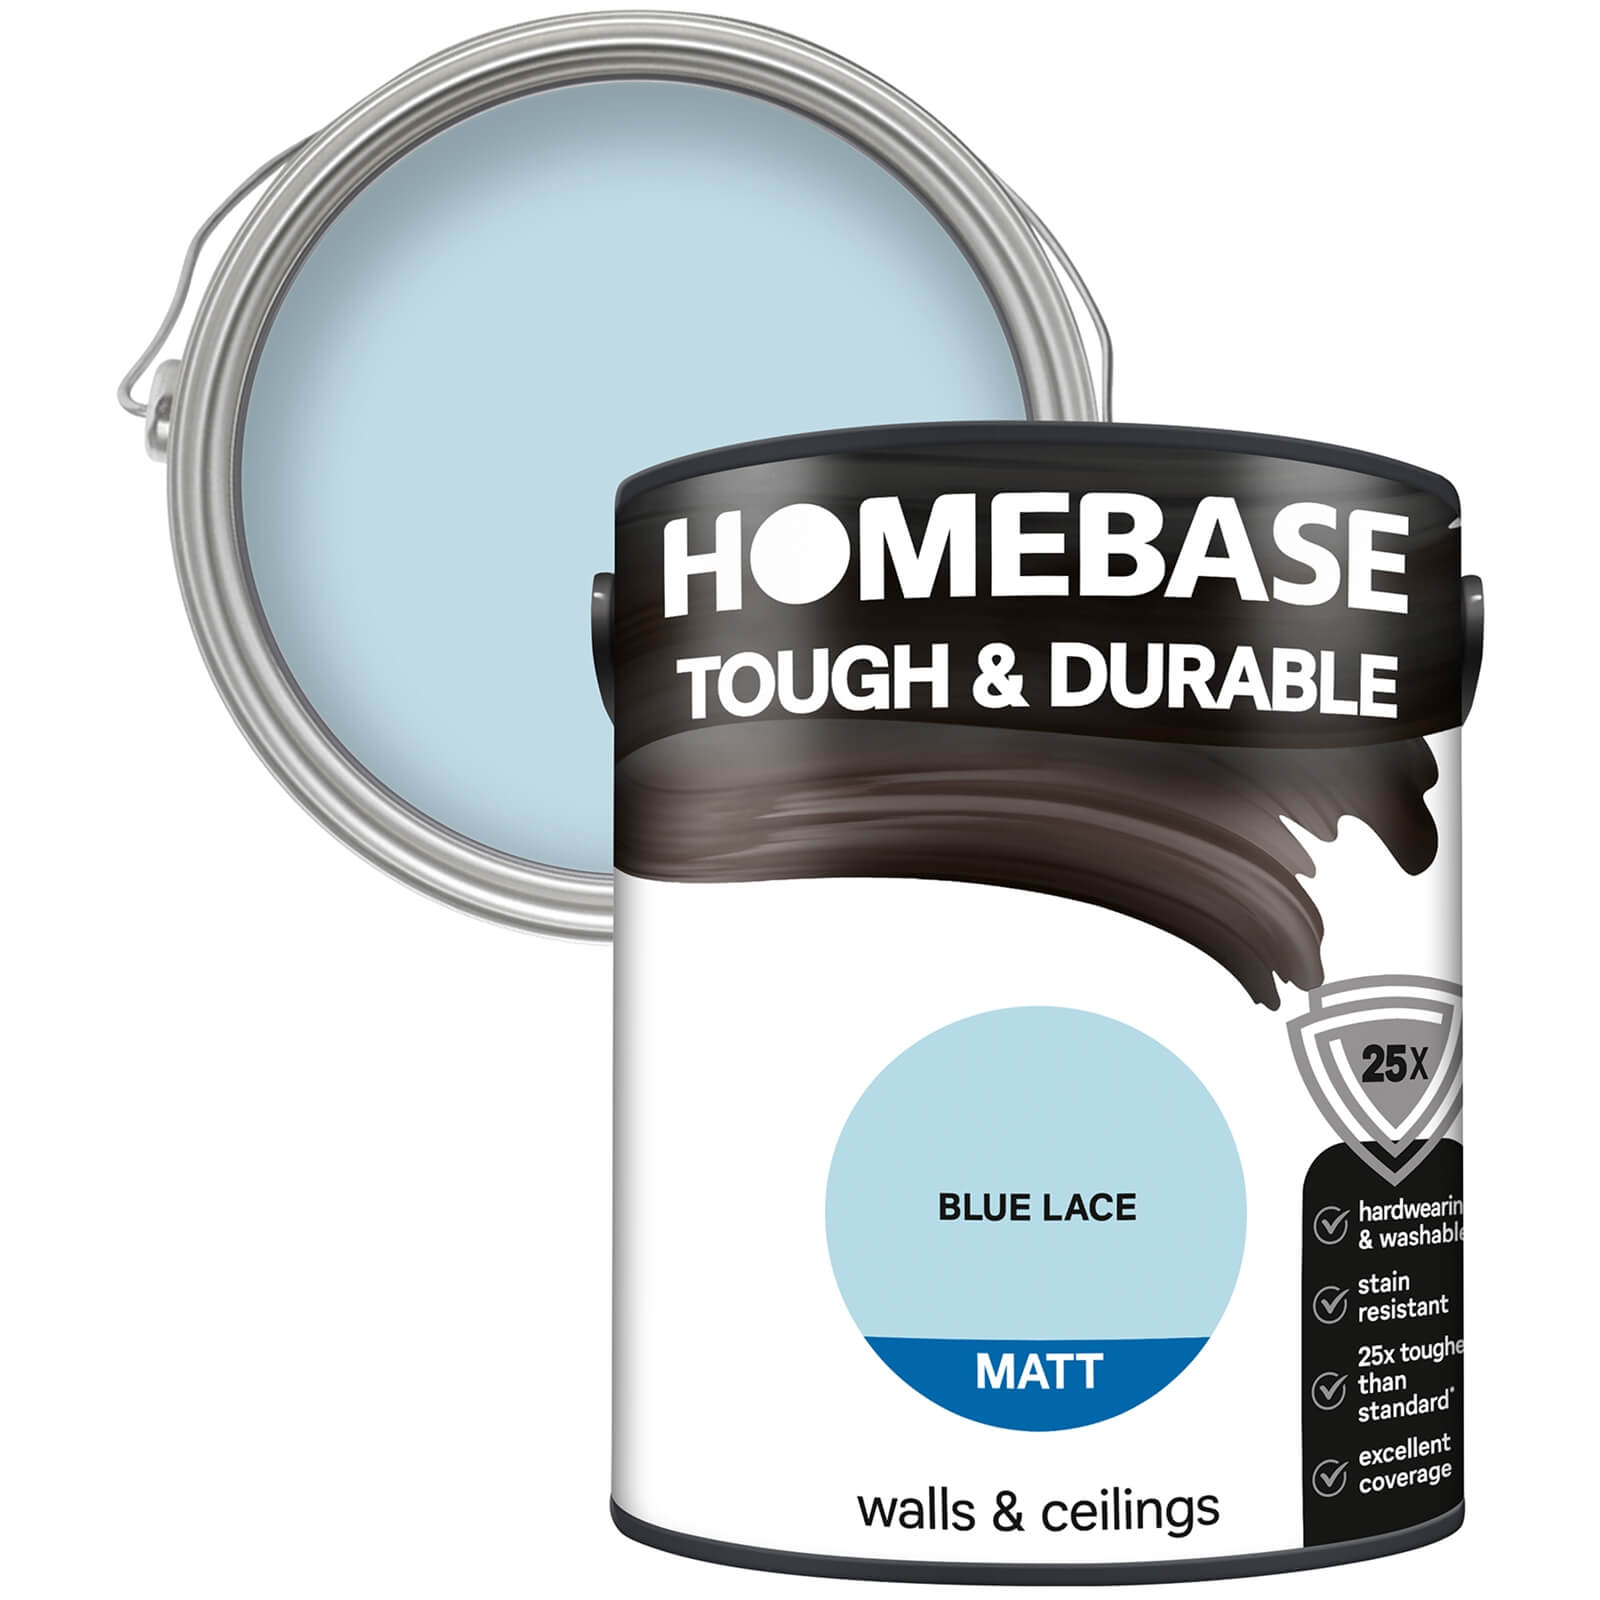 Homebase Tough & Durable Matt Emulsion Paint Blue Lace - 5L